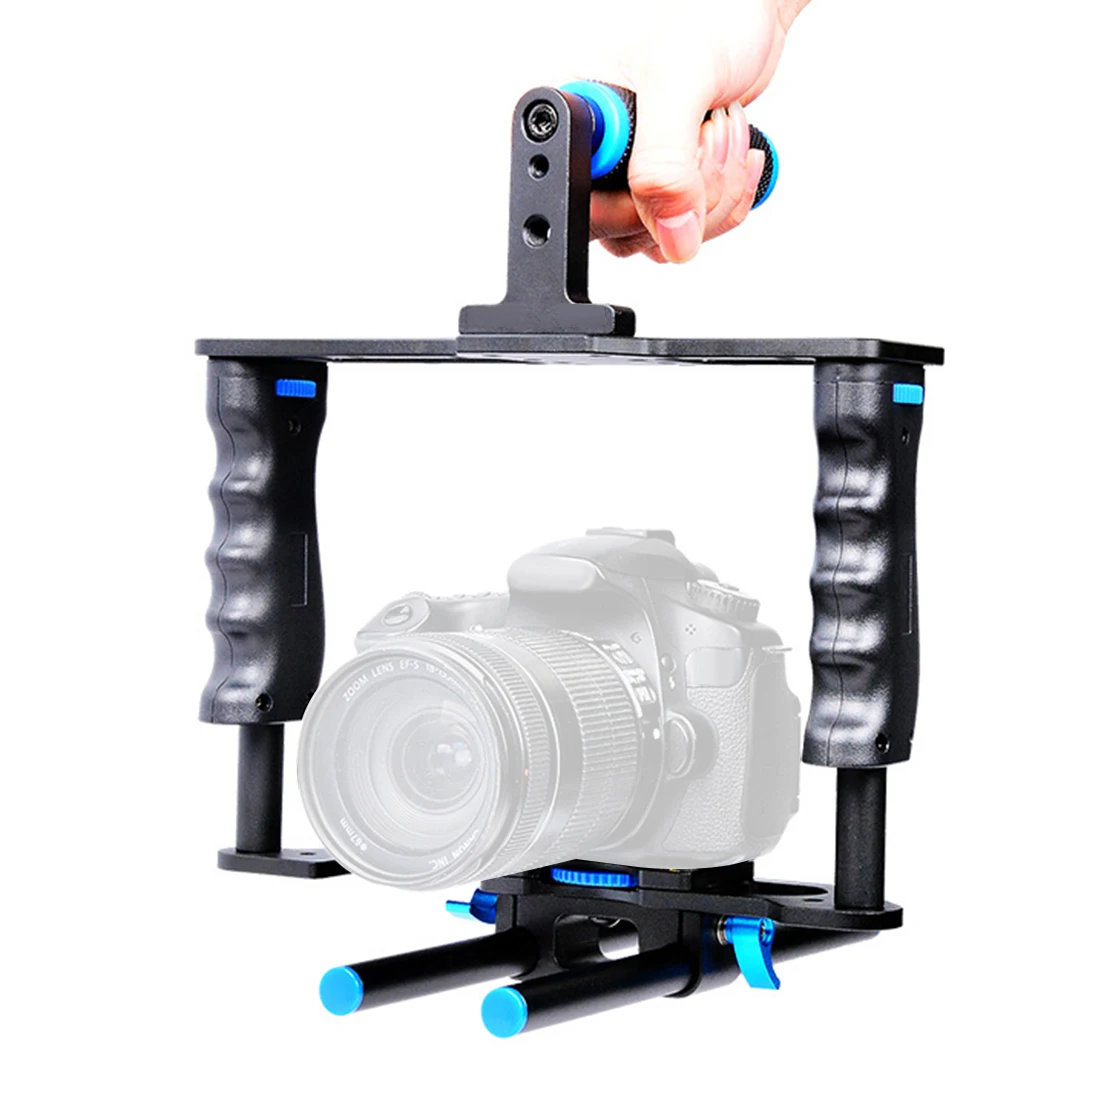 DSLR Rig камера клетка комплект Защитная камера стабилизатор система видео установка с ручкой и стержнем для Canon 5D2/6D/7D/70D/800D/700D